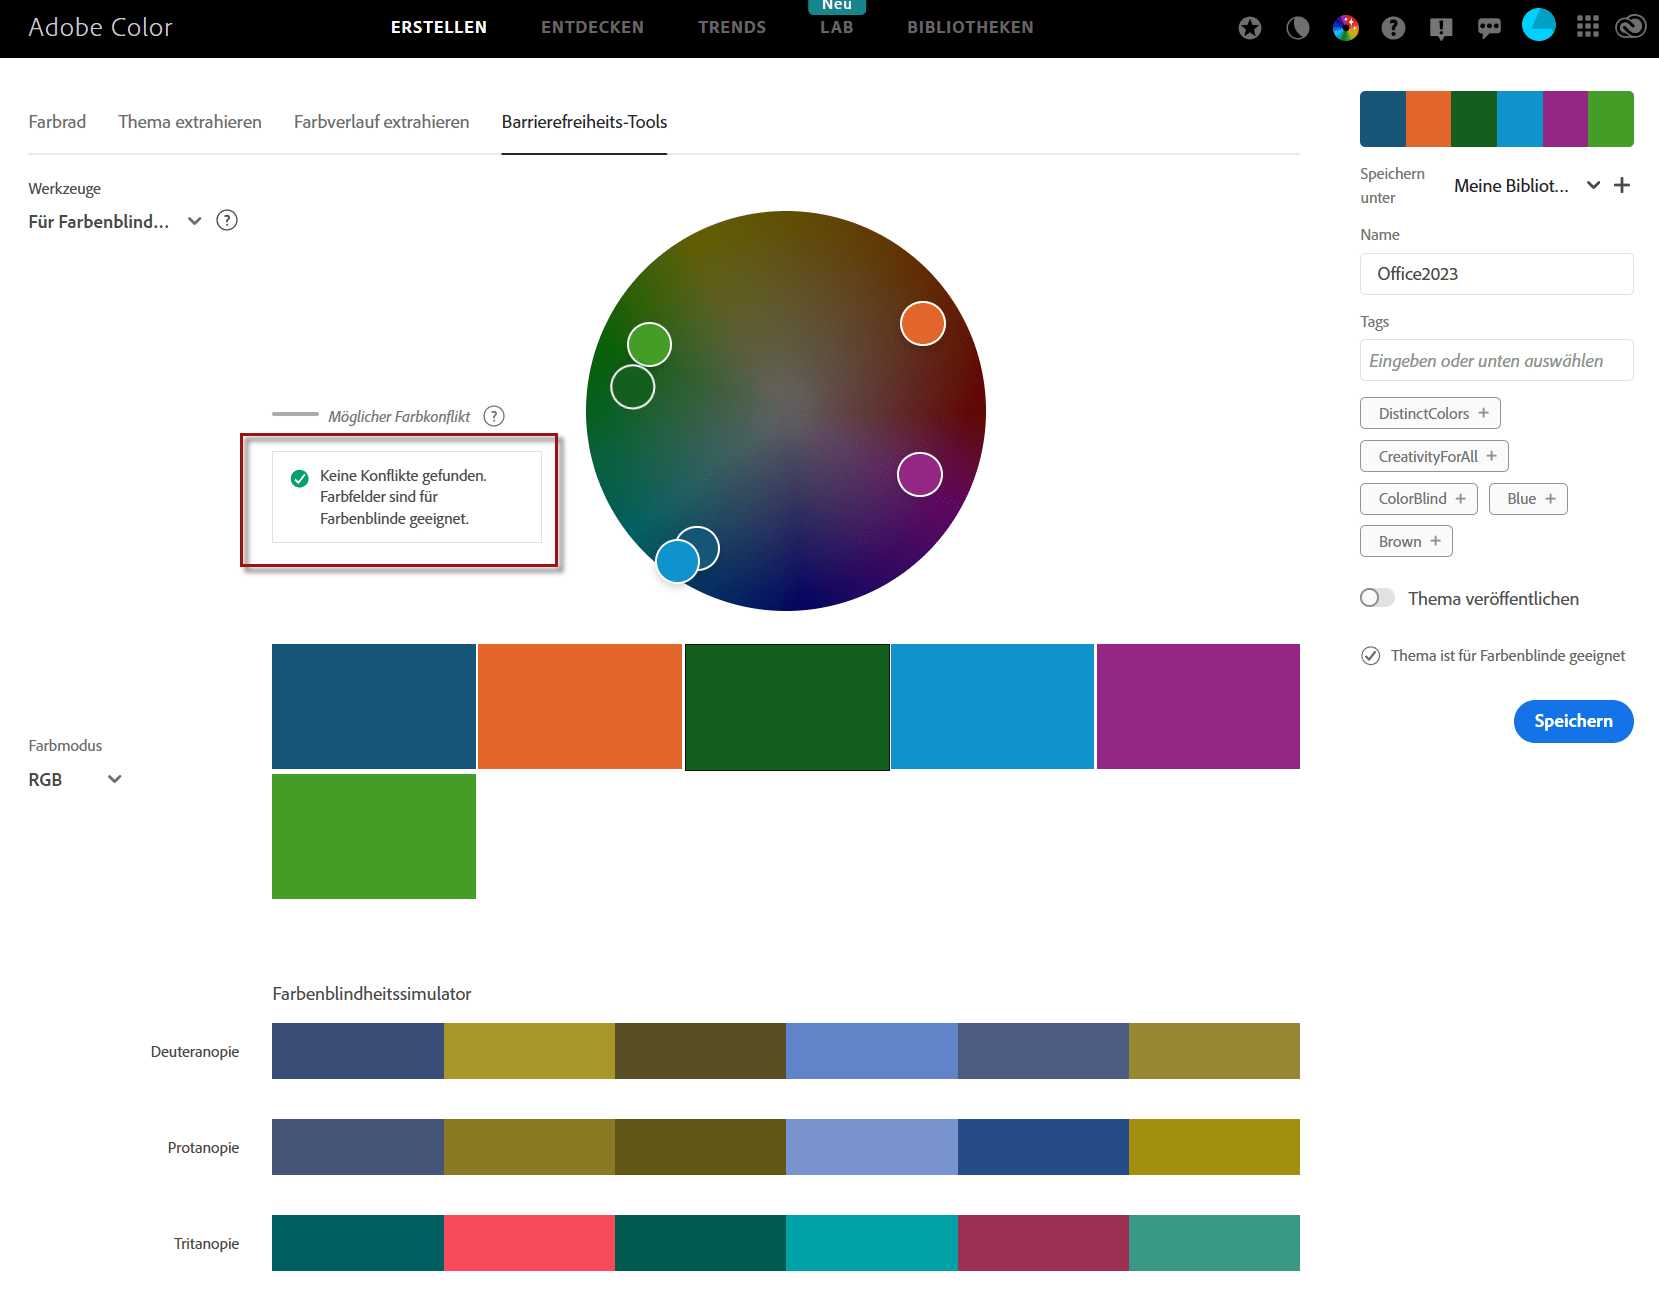 Screenshot des Barrierefreiheits-Tools in Adobe Color, in dem die Prüfergebnisse für die neue Office-Farbpalette angezeigt werden. Markiert ist das Ergebnis: "Keine Konflikte gefunden. Farbfelder sind für Farbenblinde geeignet."